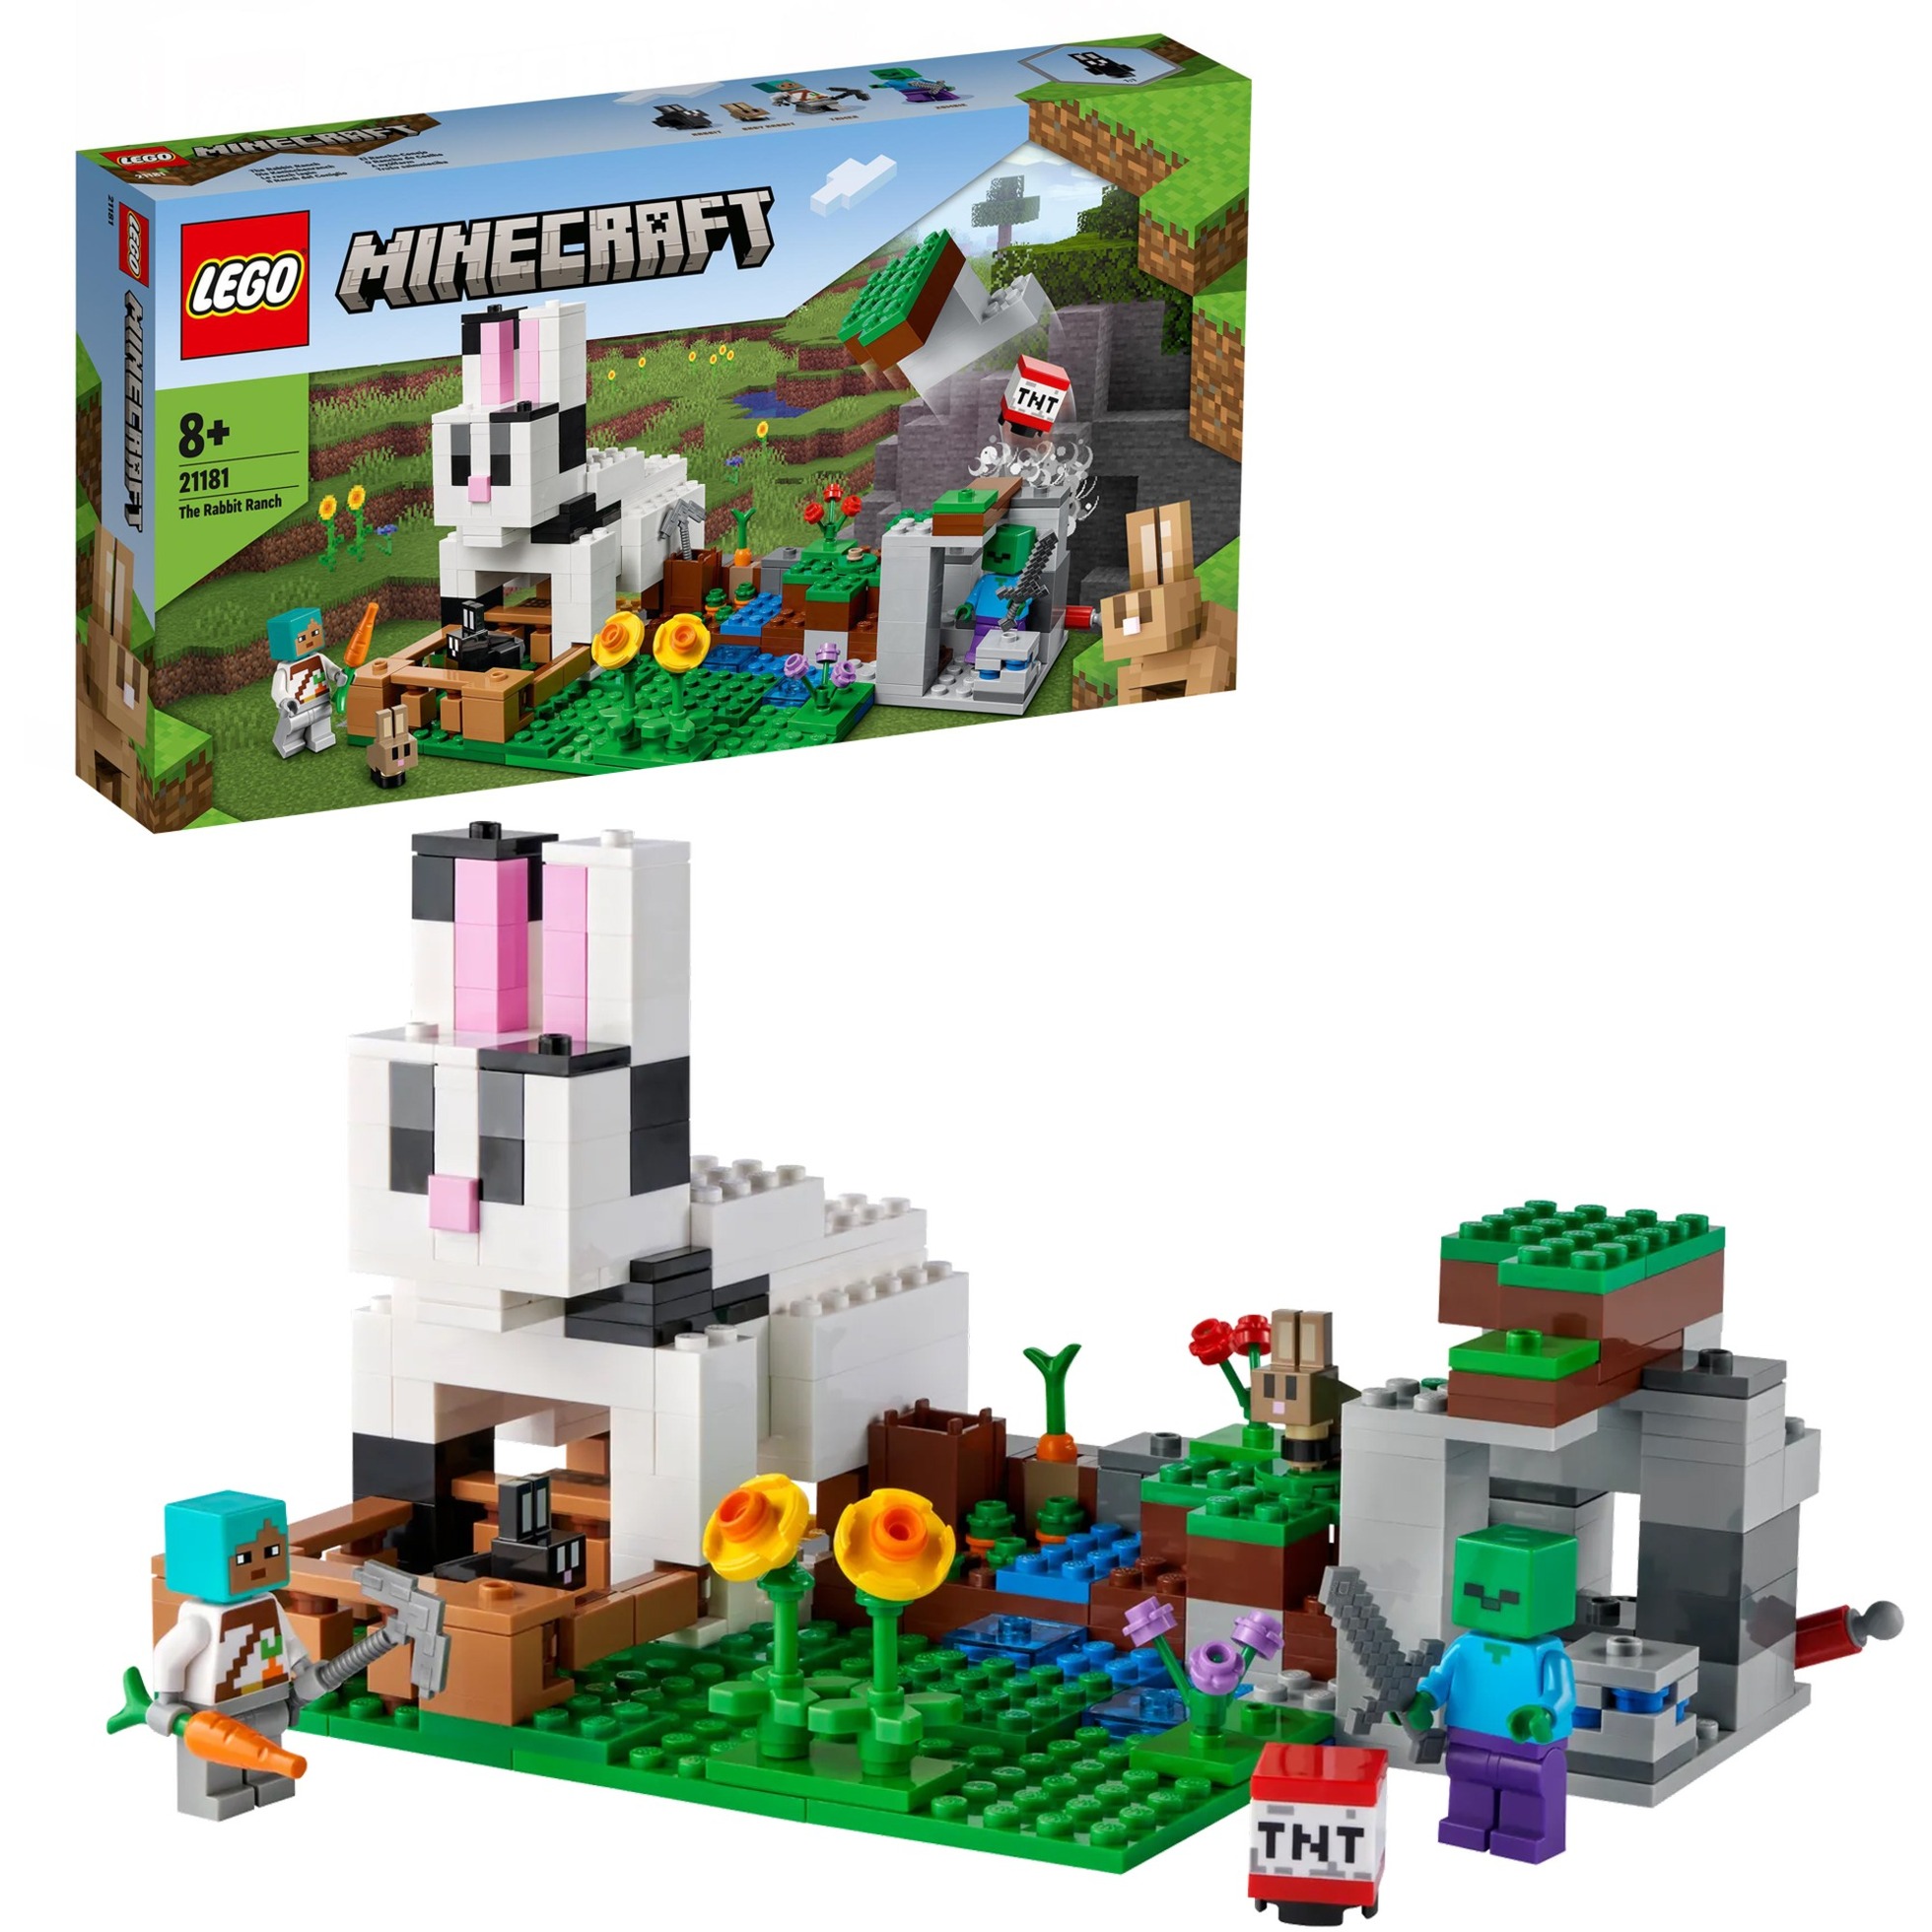 Image of Alternate - 21181 Minecraft Die Kaninchenranch, Konstruktionsspielzeug online einkaufen bei Alternate